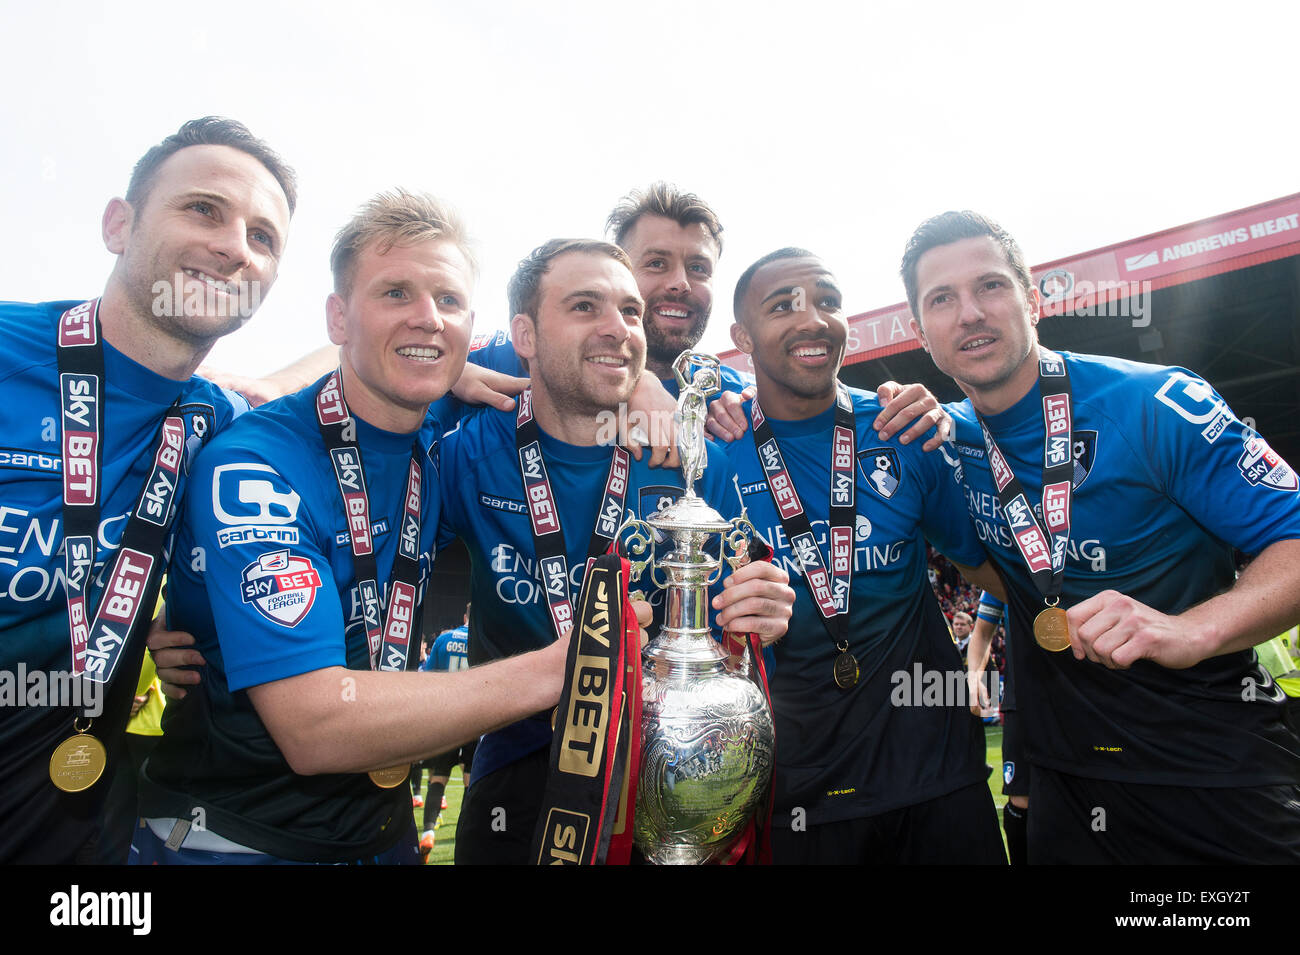 El AFC Bournemouth jugadores celebrar el triunfo en el Campeonato apuesta Sky Foto de stock